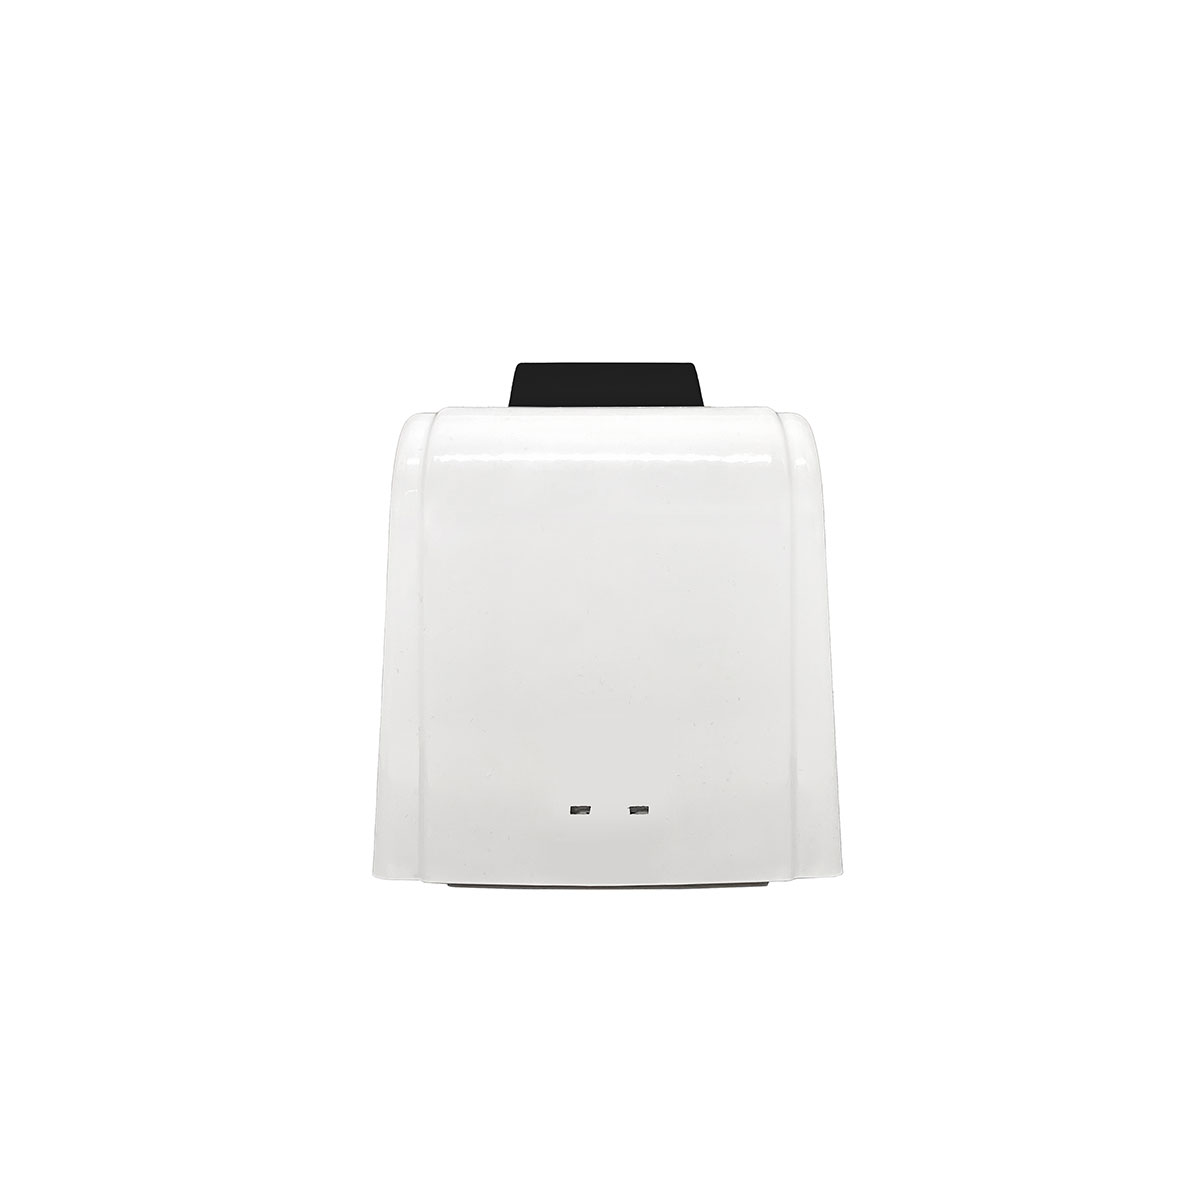 Дозатор для жидкого мыла X7 нажимной 0,7 л СТАНДАРТ, корпус белый, кнопка черная фото 3